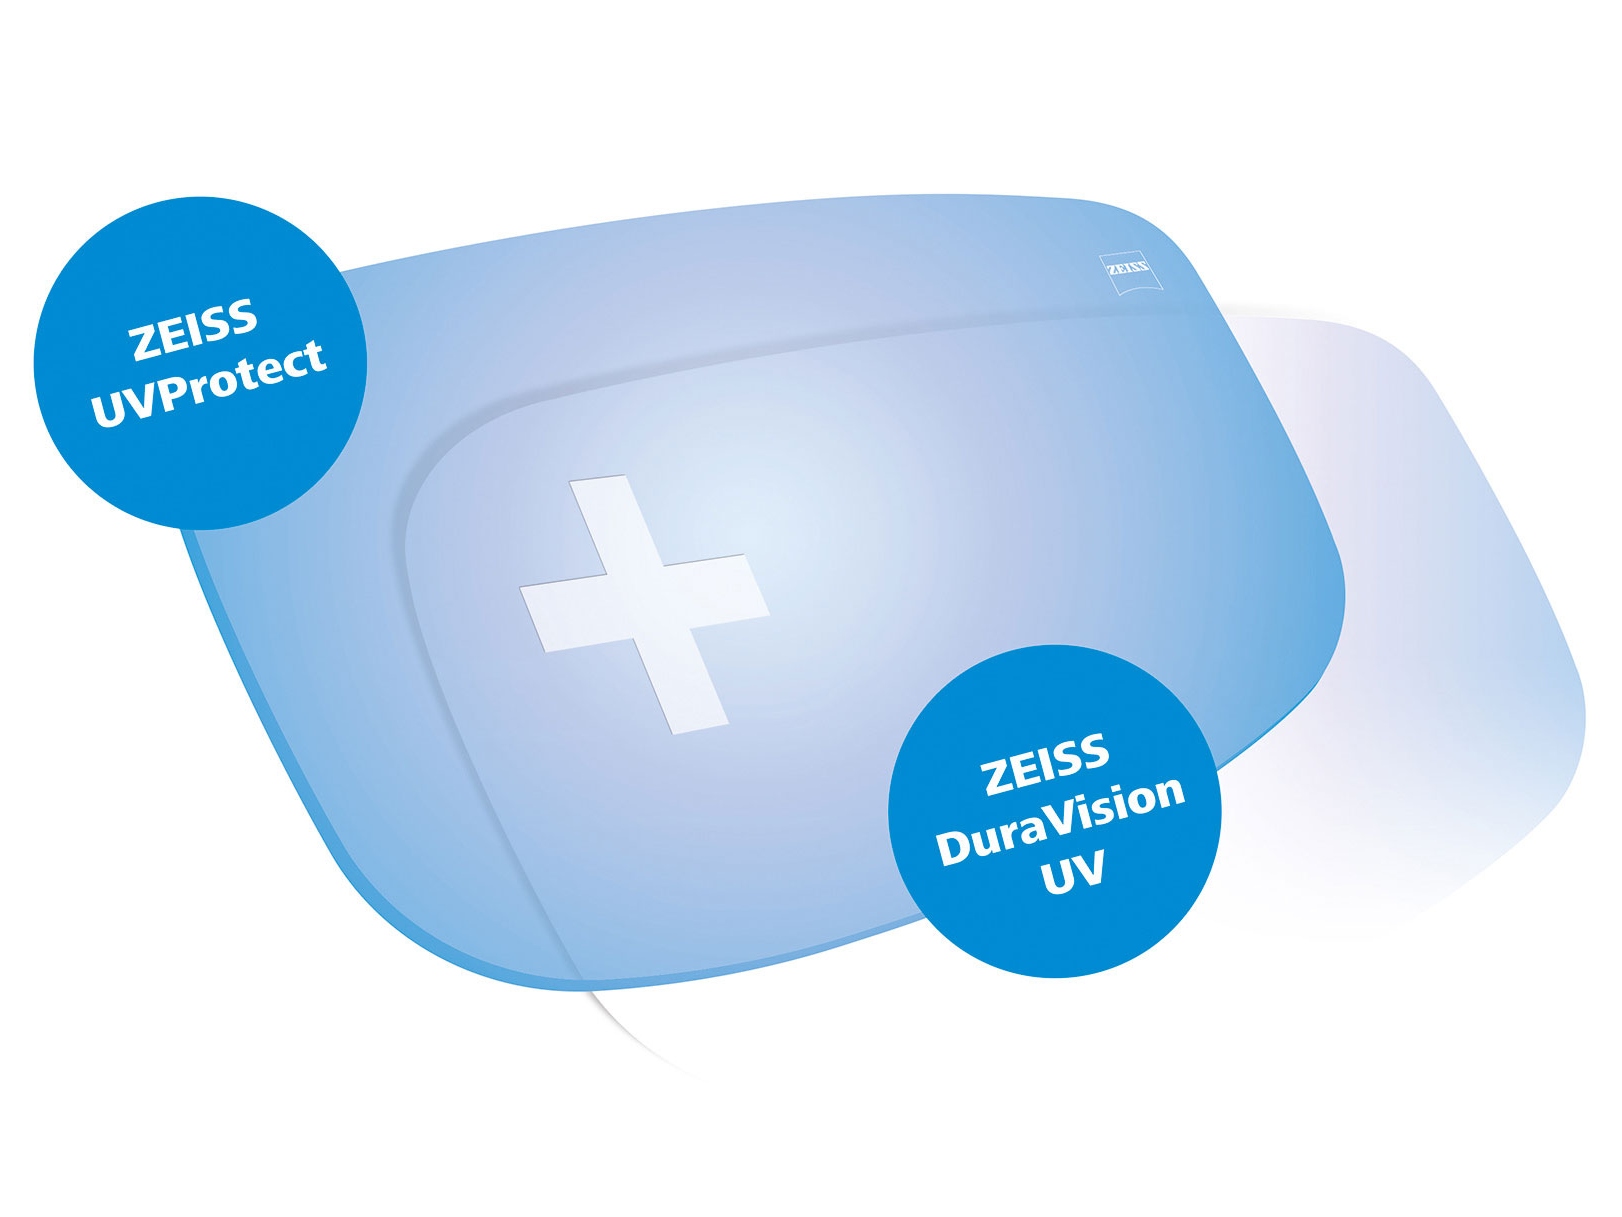 Všetky šošovky ZEISS sú štandardne vybavené ochranou proti UV žiareniu zo všetkých strán. Na obrázku sú znázornené dve riešenia.